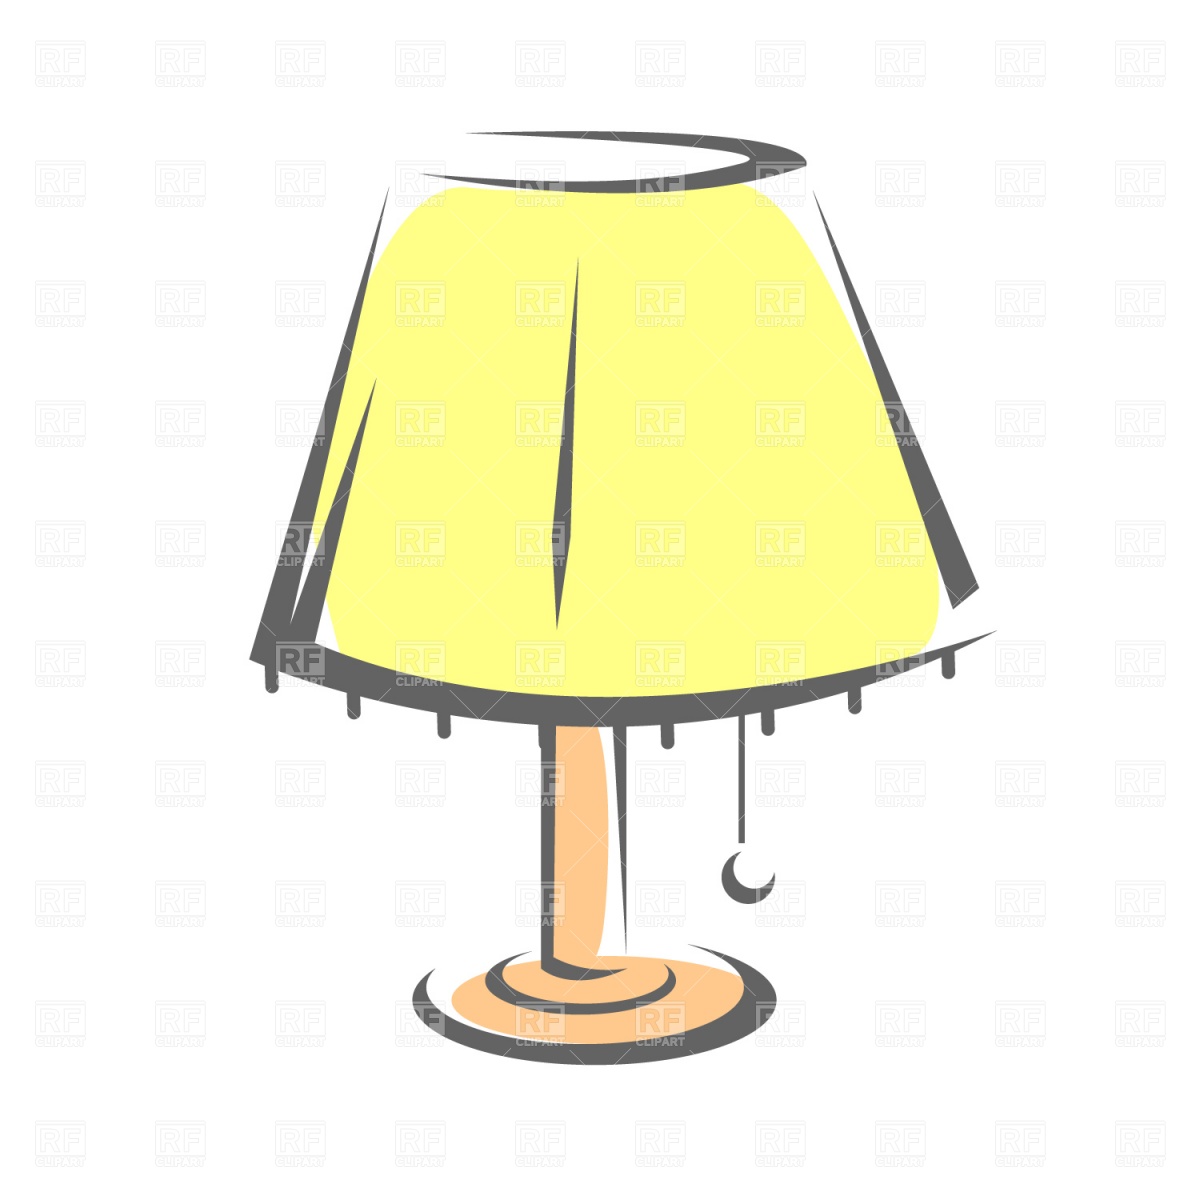 Lamp clipart - ClipartFest